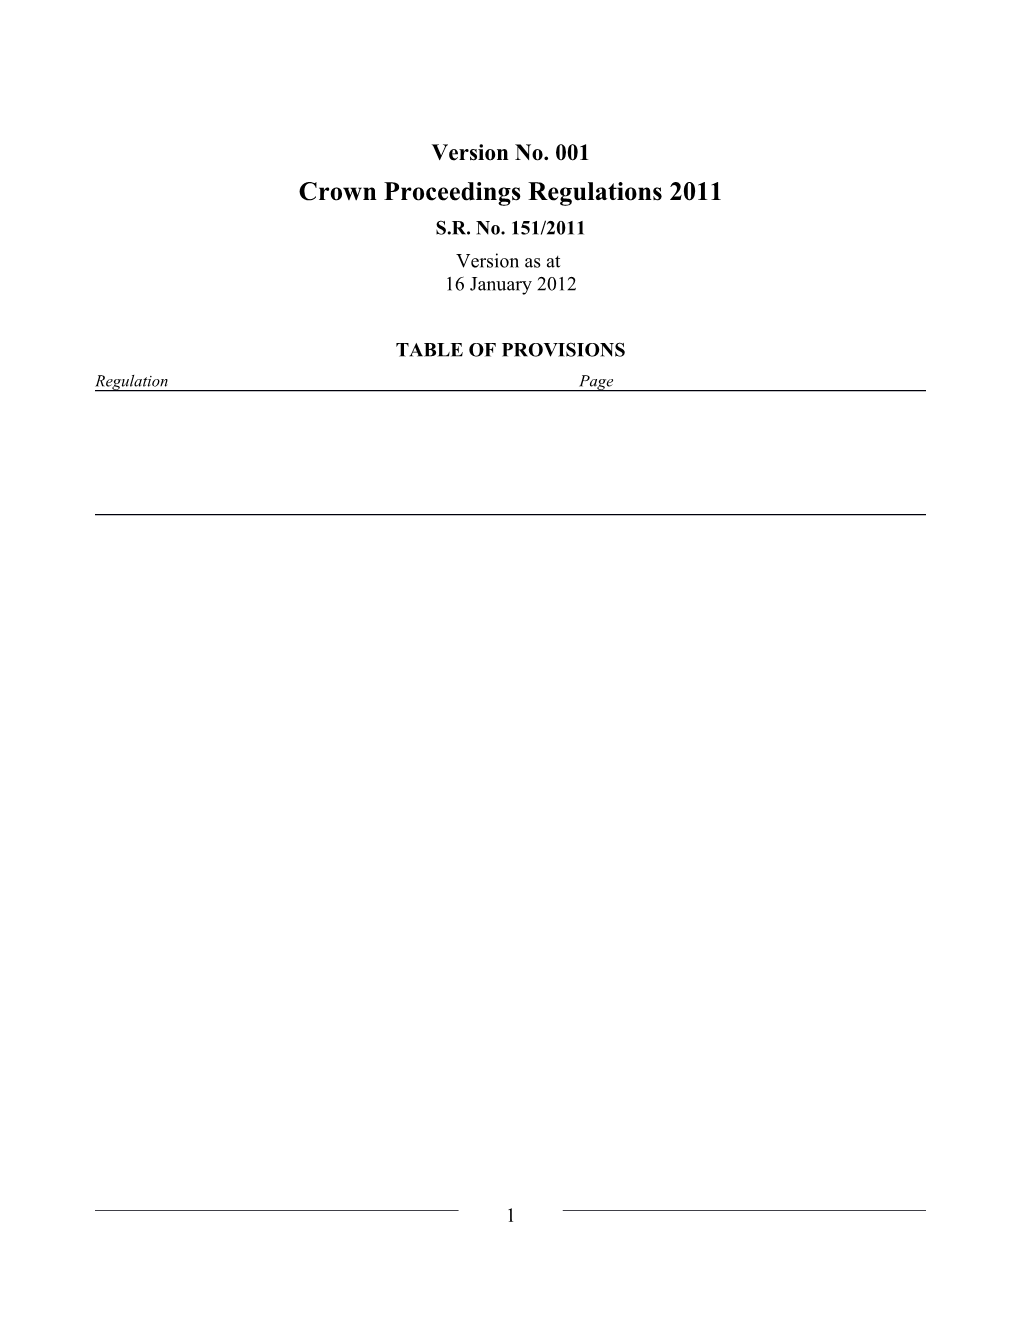 Crown Proceedings Regulations 2011